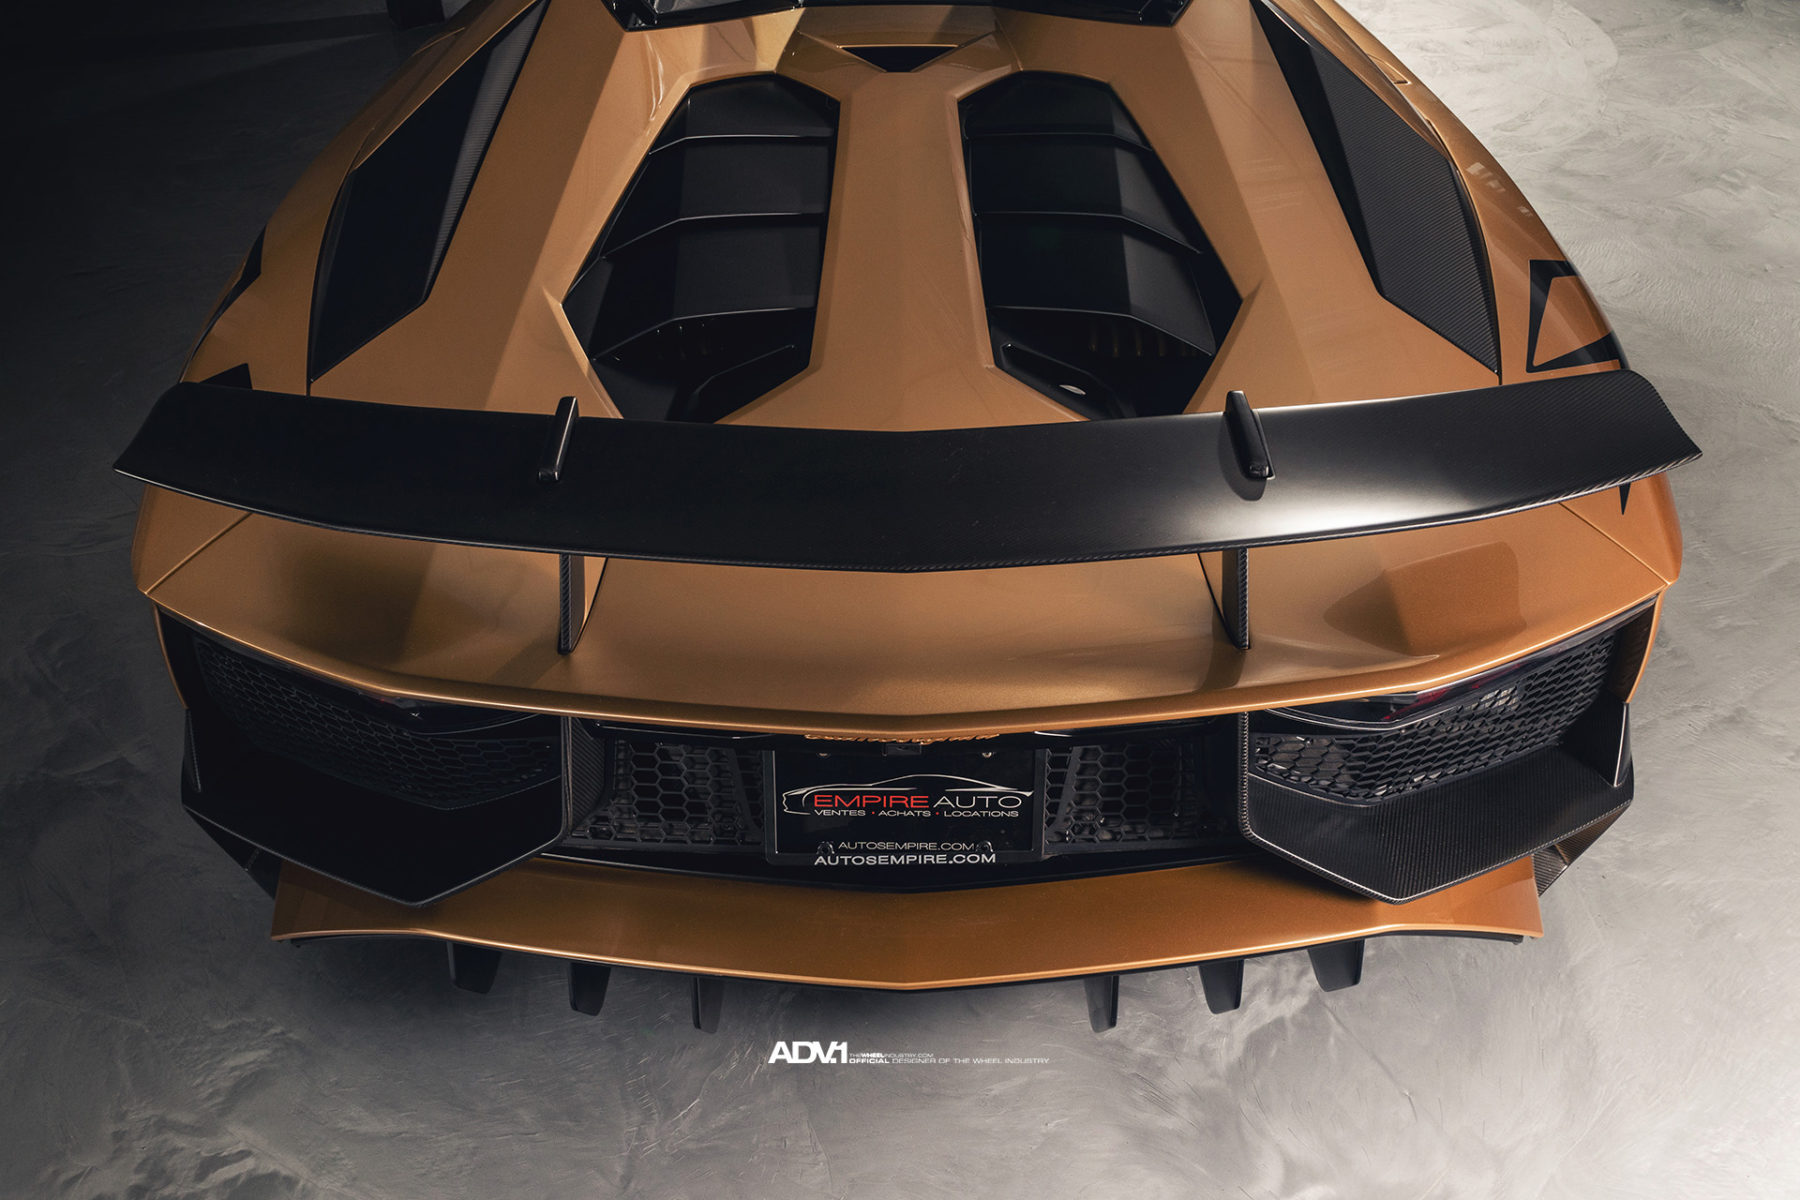 Ngam-Lamborghini-Aventador-SV-Roadster-trong-bo-canh-vang-dong-cuc-chat-anh-13